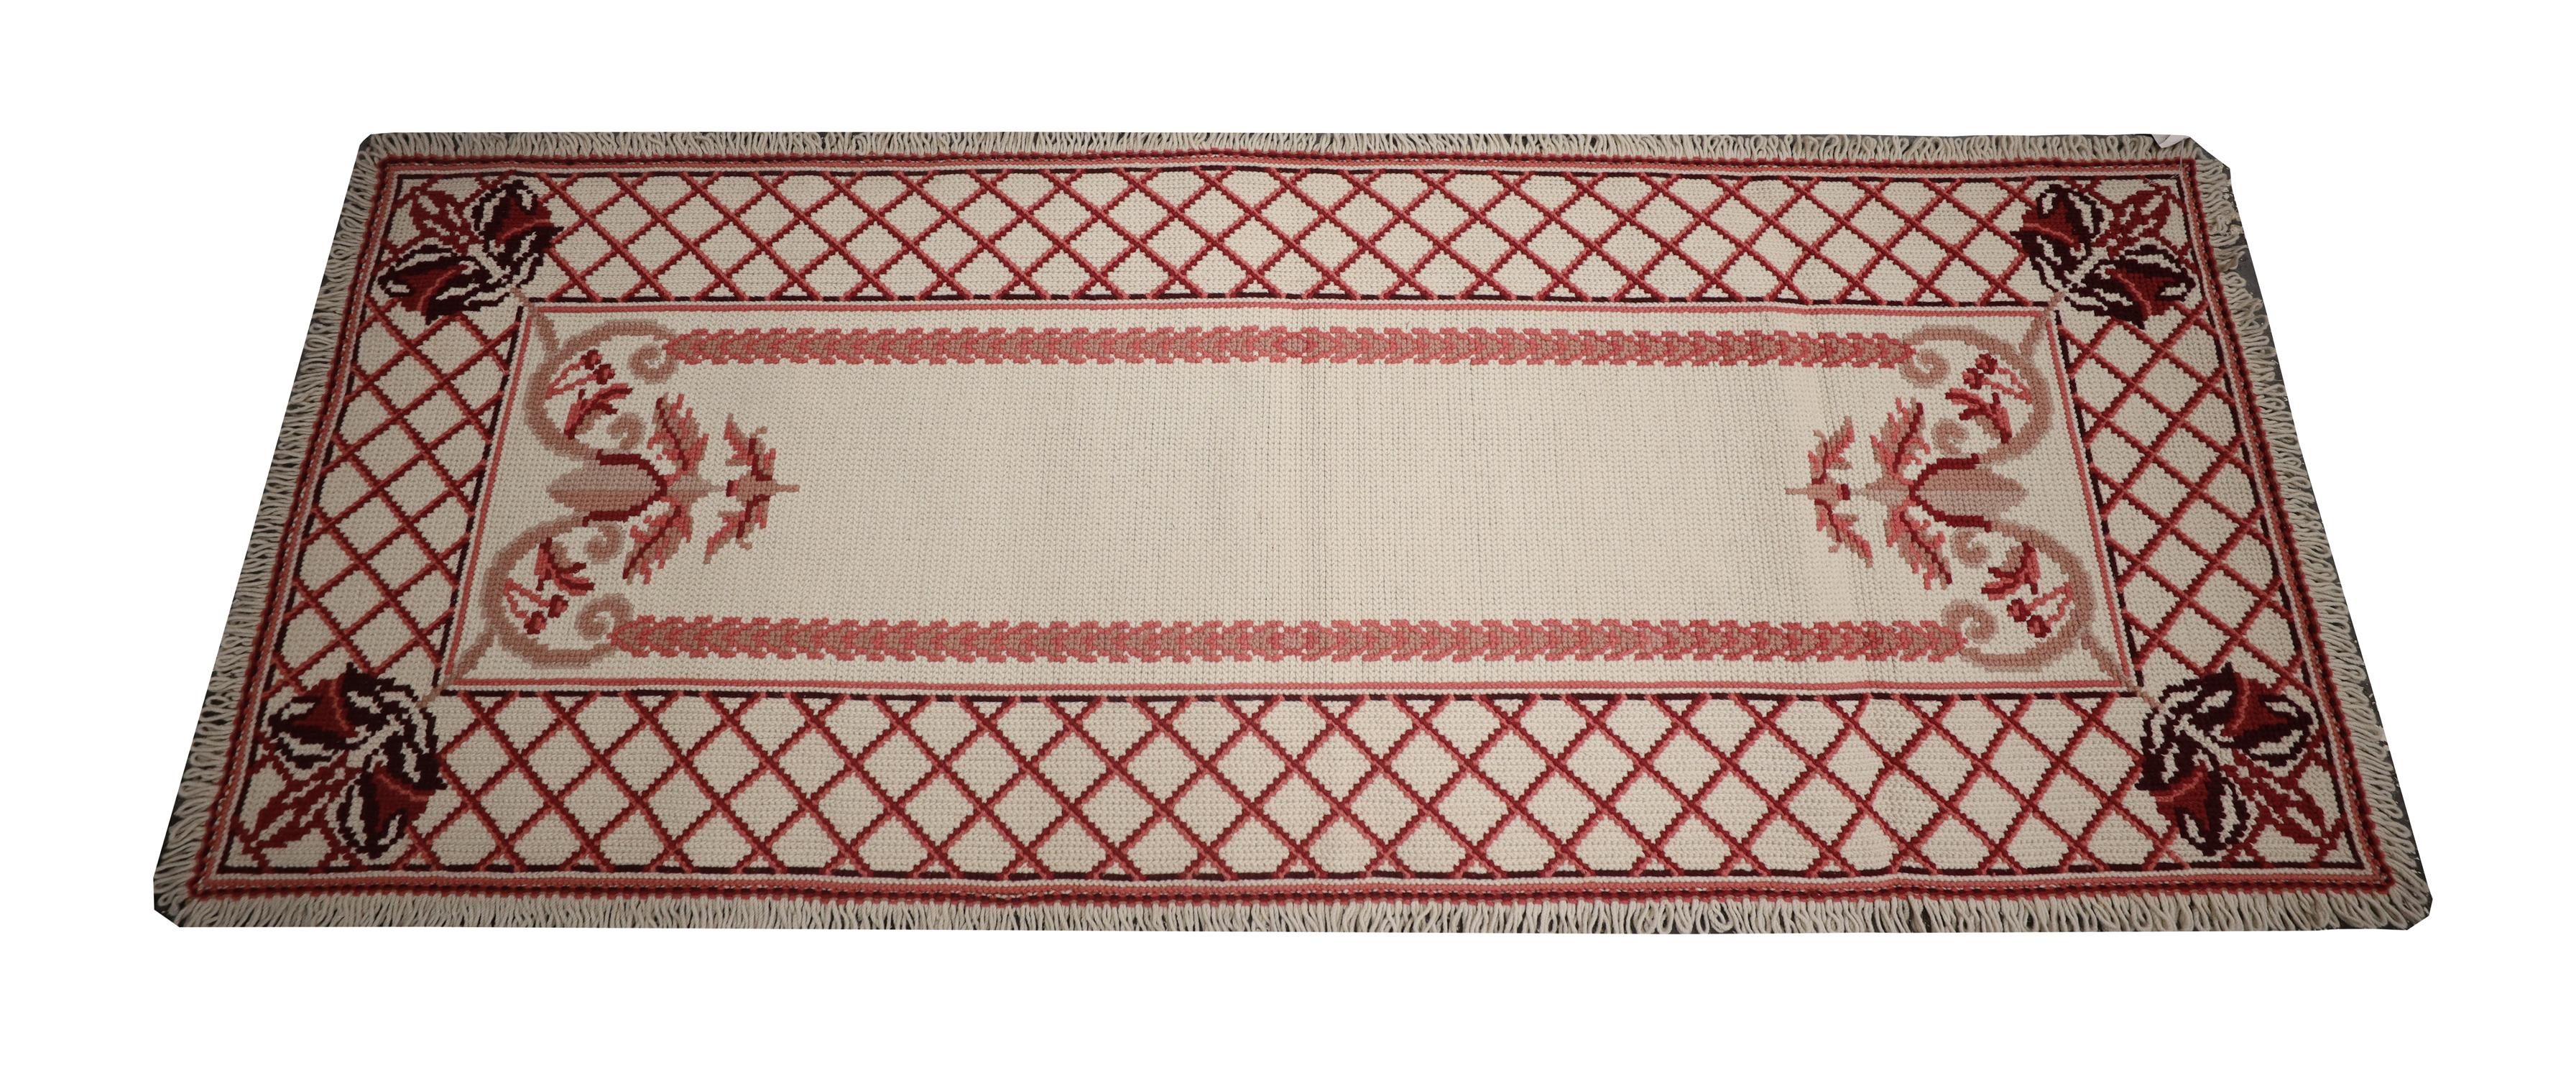 Ce style de tapis élégant est populaire dans les magasins de tapis orientaux en raison de la forte demande des décorateurs d'intérieur et des propriétaires. Le motif présente un champ central ouvert qui a été décoré de motifs d'encadrement